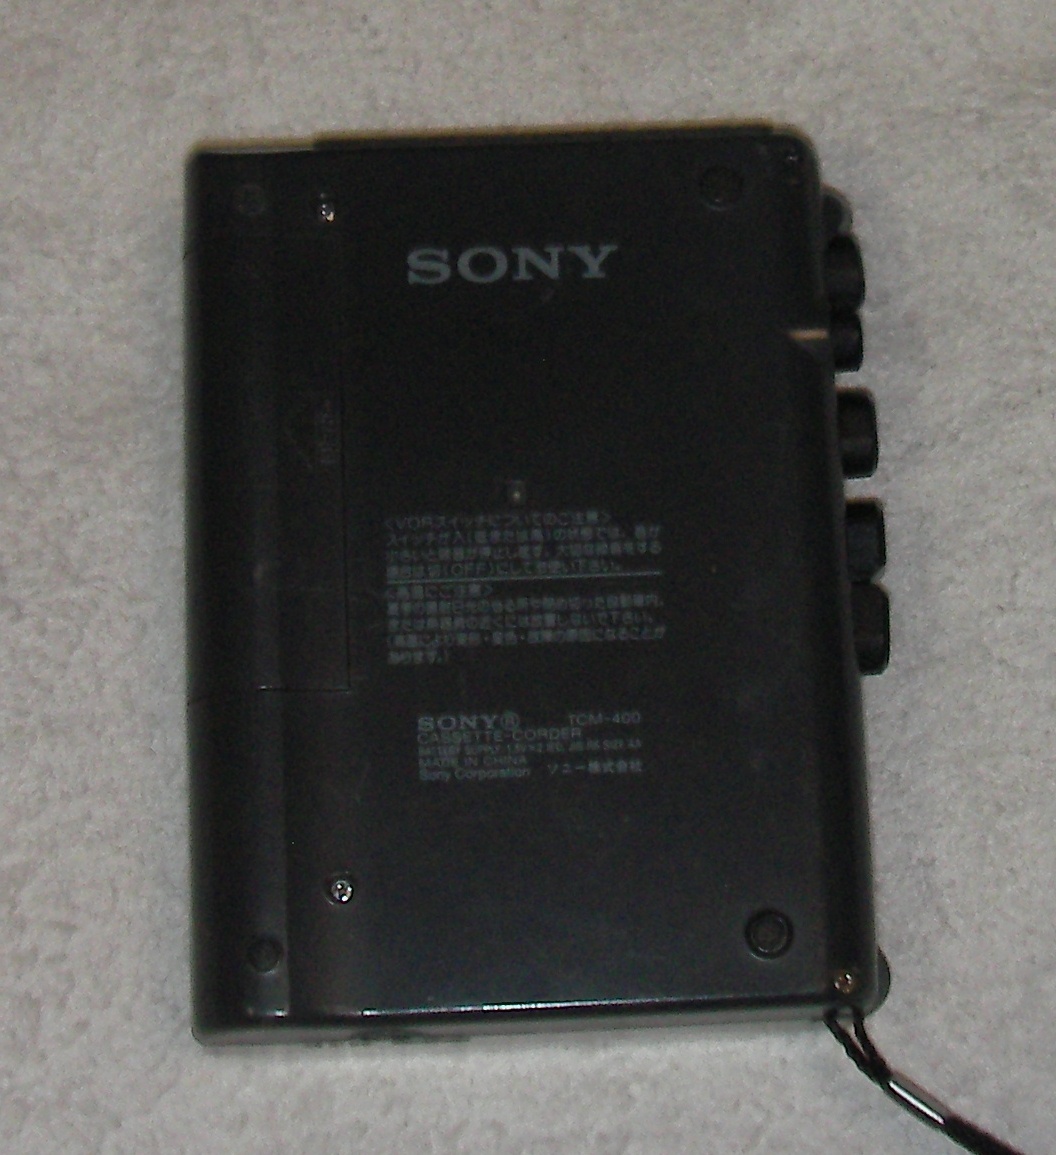 特上：Sony TCM-400 ソニー カセットテープレコーダー、即決おまけ付_画像4